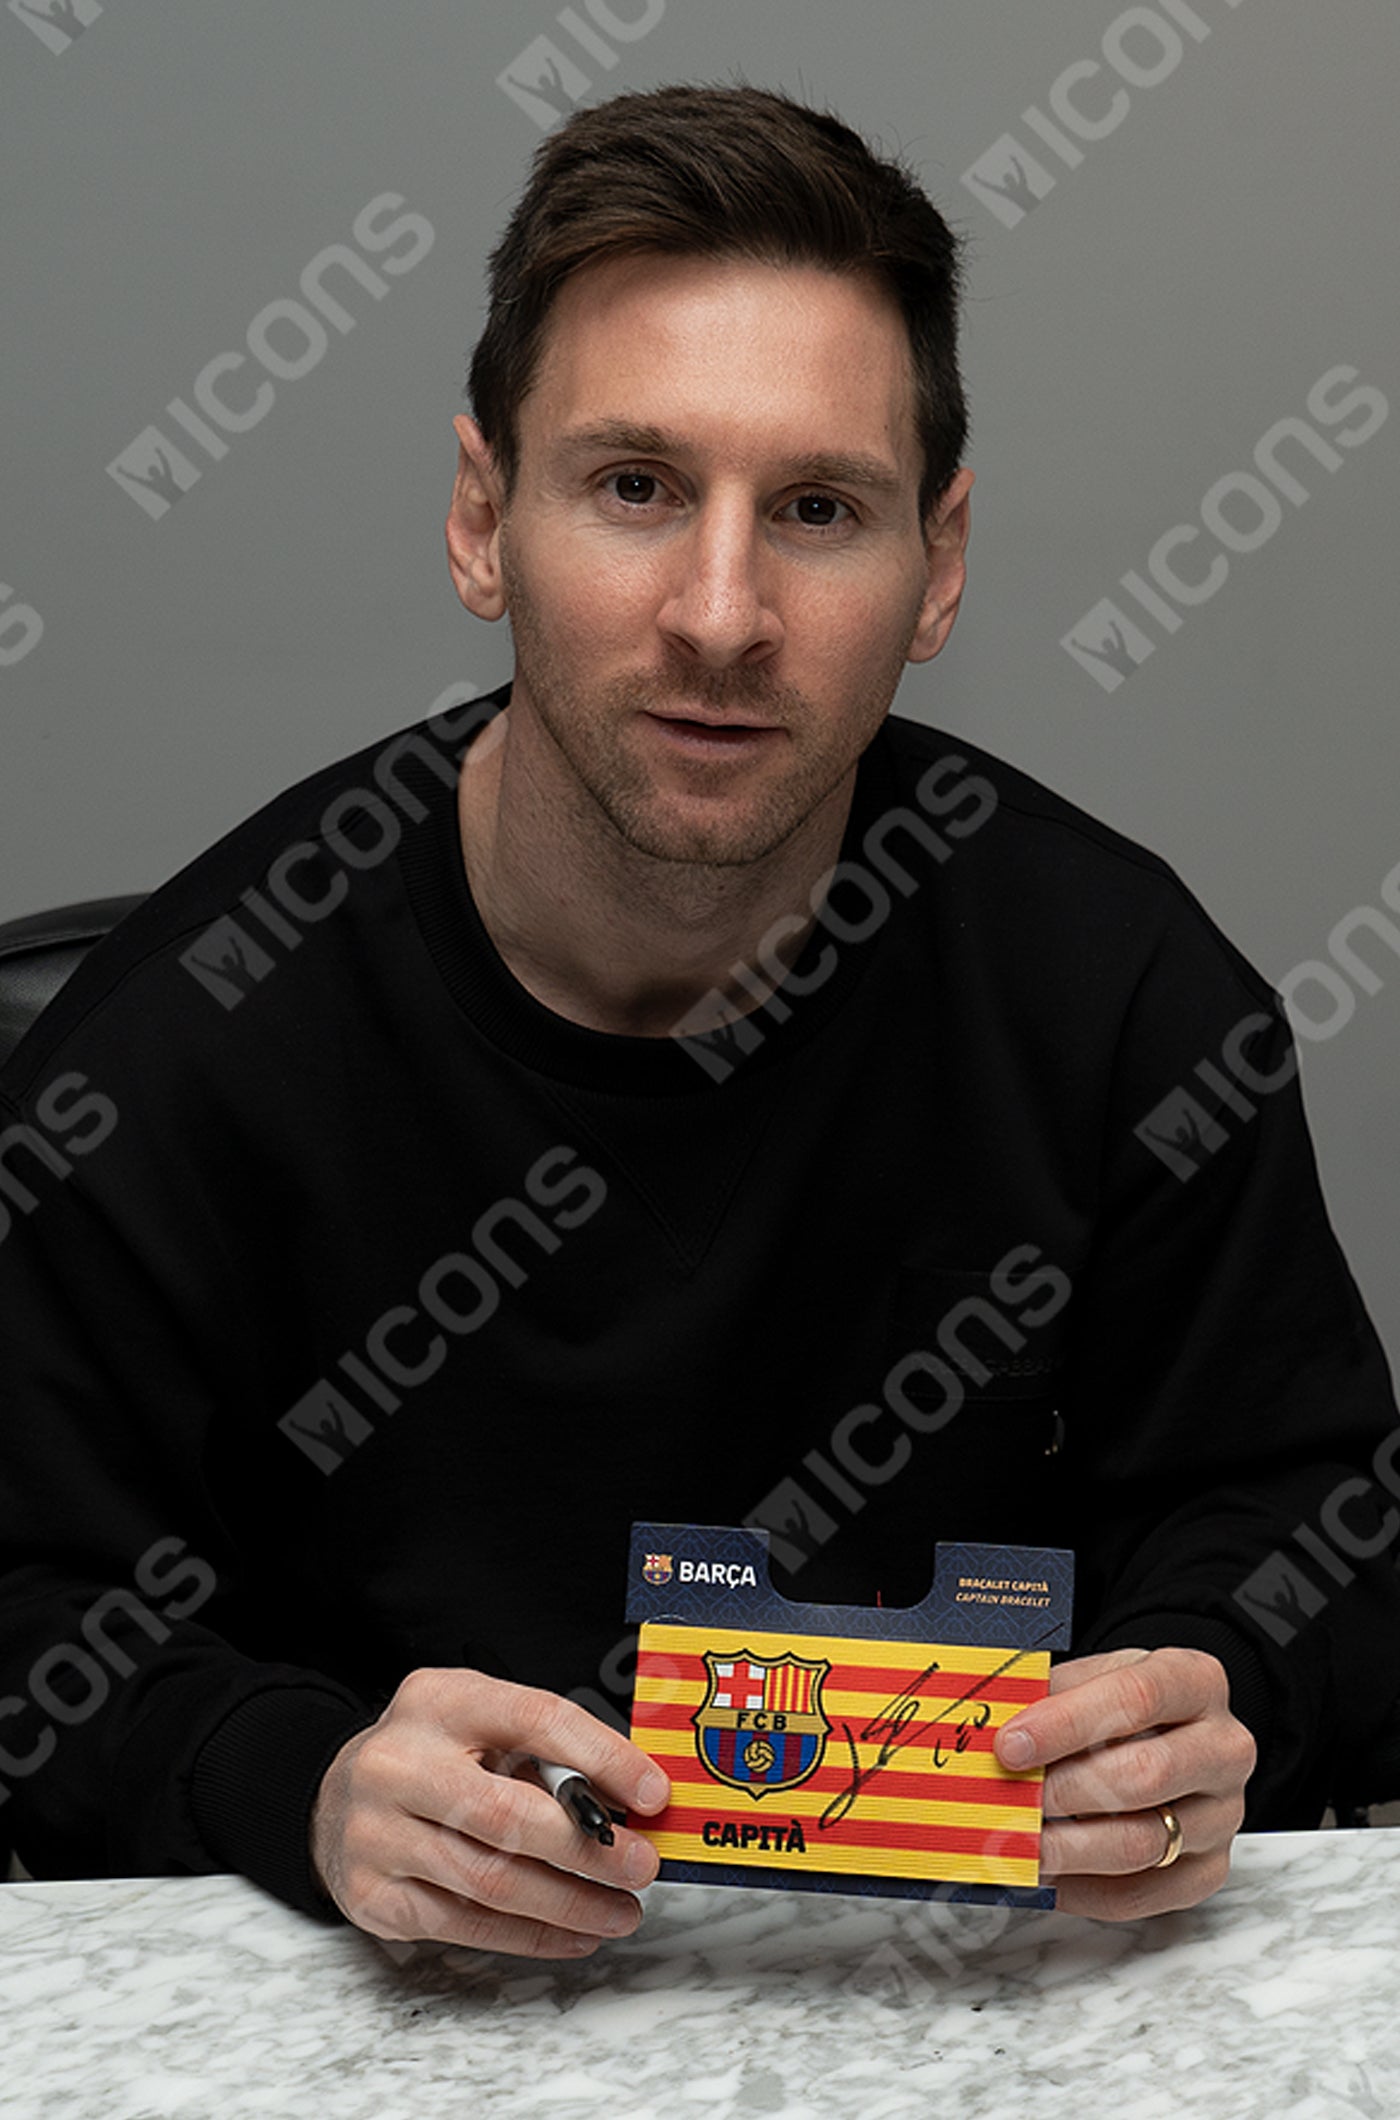 Braçalet de capità del FC Barcelona signat per Lionel Messi i enmarcat